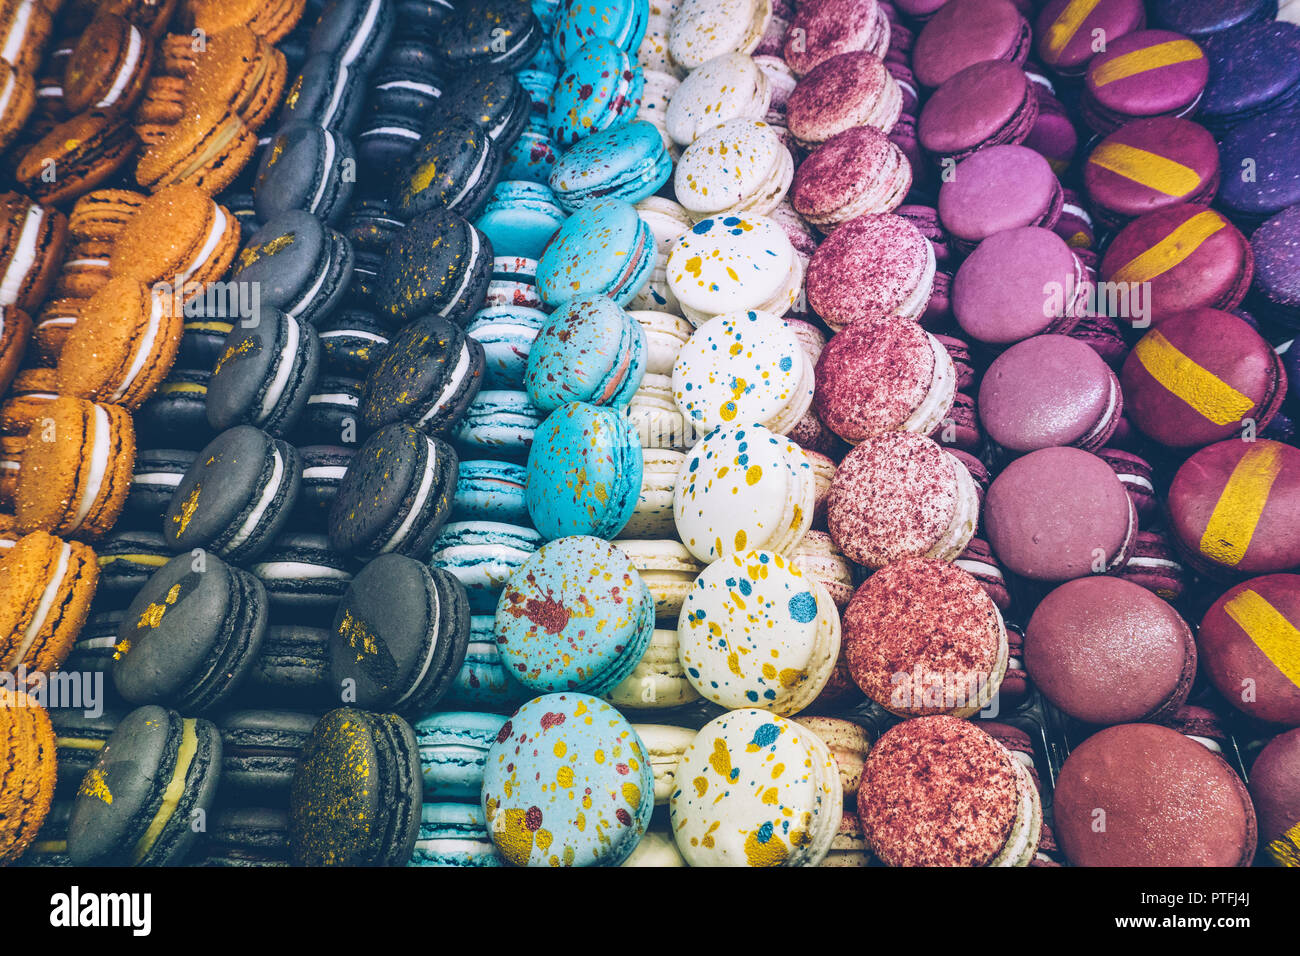 Beaucoup de macarons macarons multicolores (français) sur le magasin de bonbons ou la boulangerie. La pâtisserie française. Close-up, macarons colorés background Banque D'Images